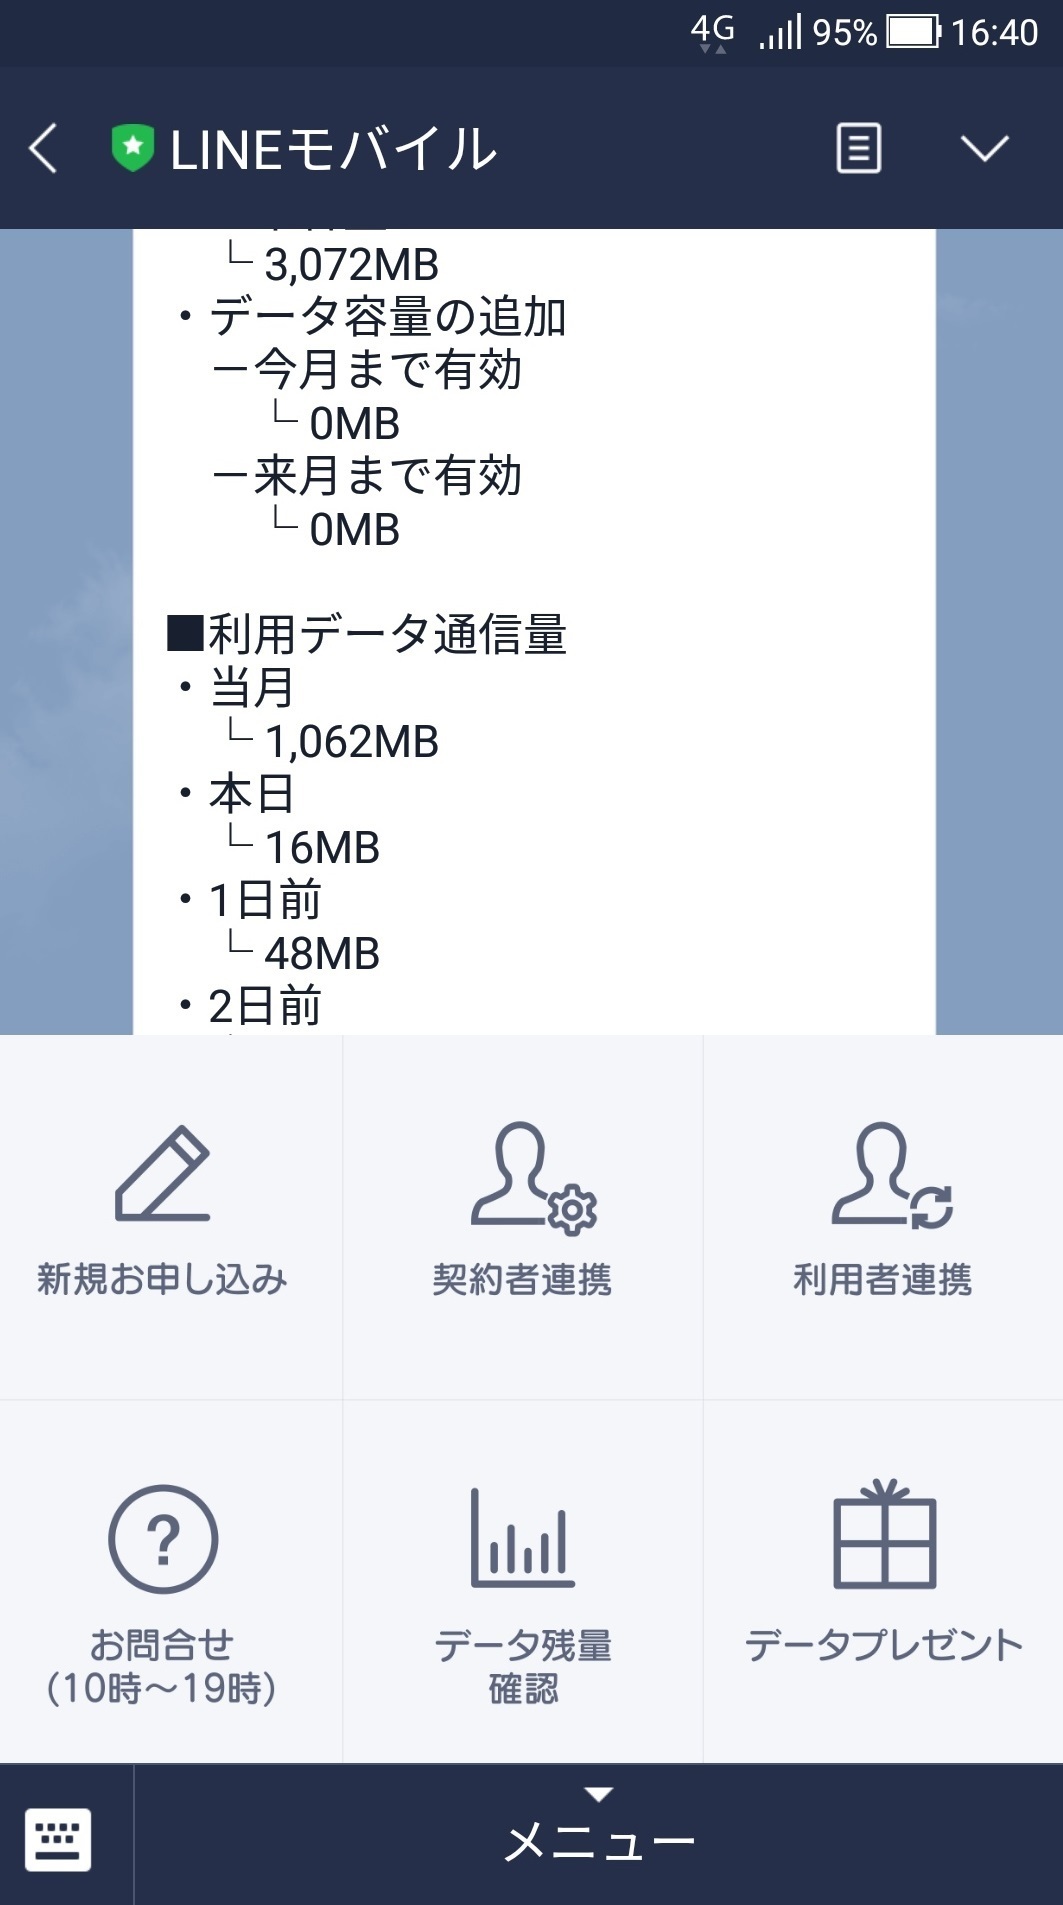 data_sumaho_net_nokori_LINEmobile_1.jpg